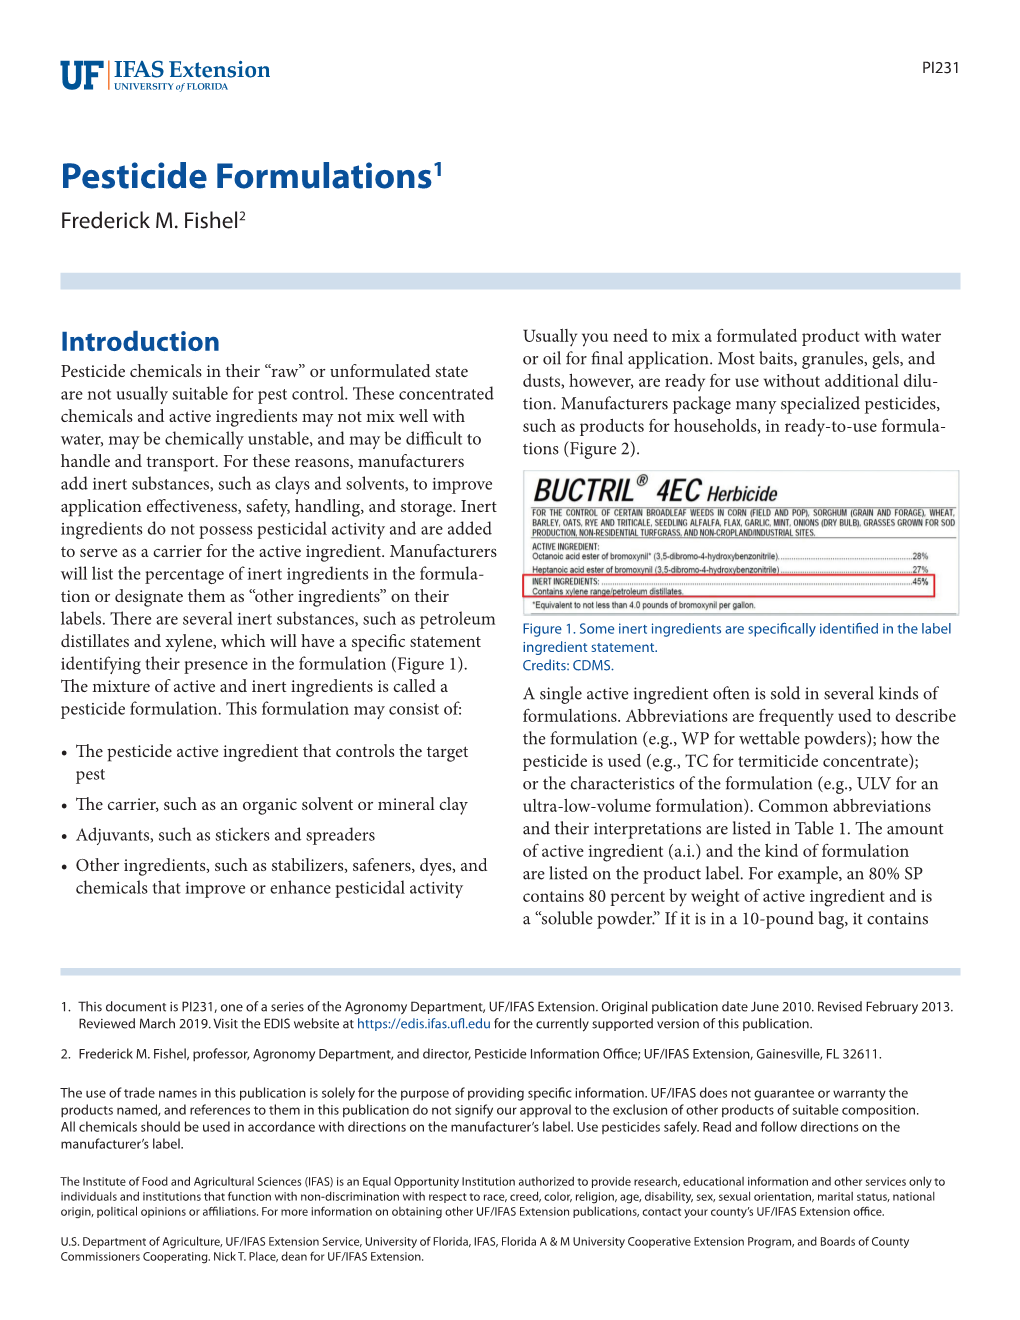 Pesticide Formulations1 Frederick M